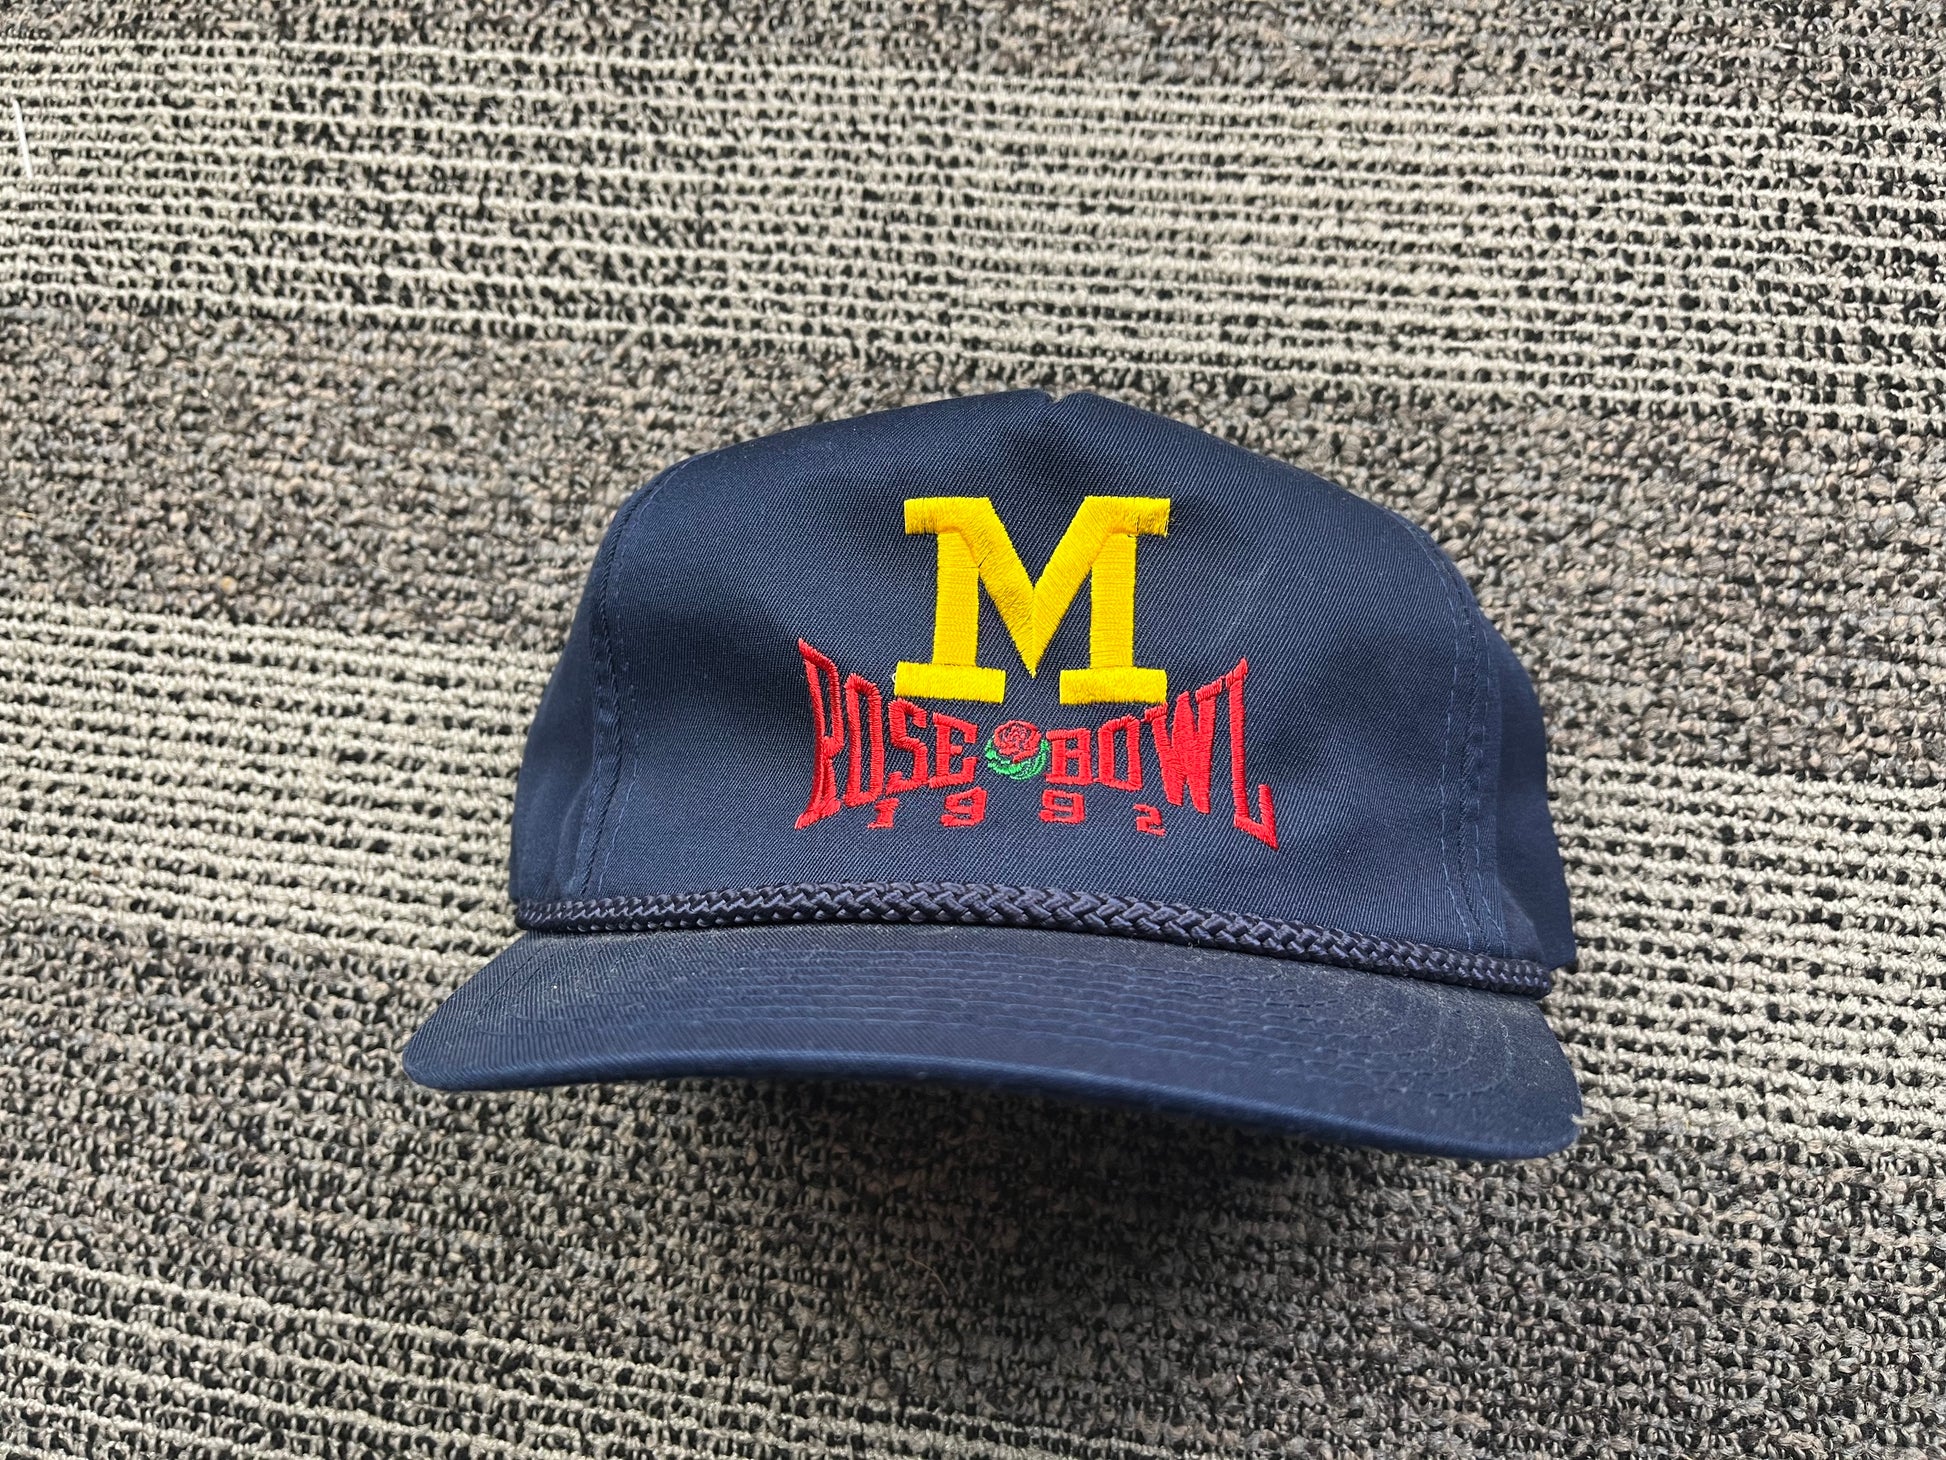 Vintage Michigan Rose Bowl Hat 